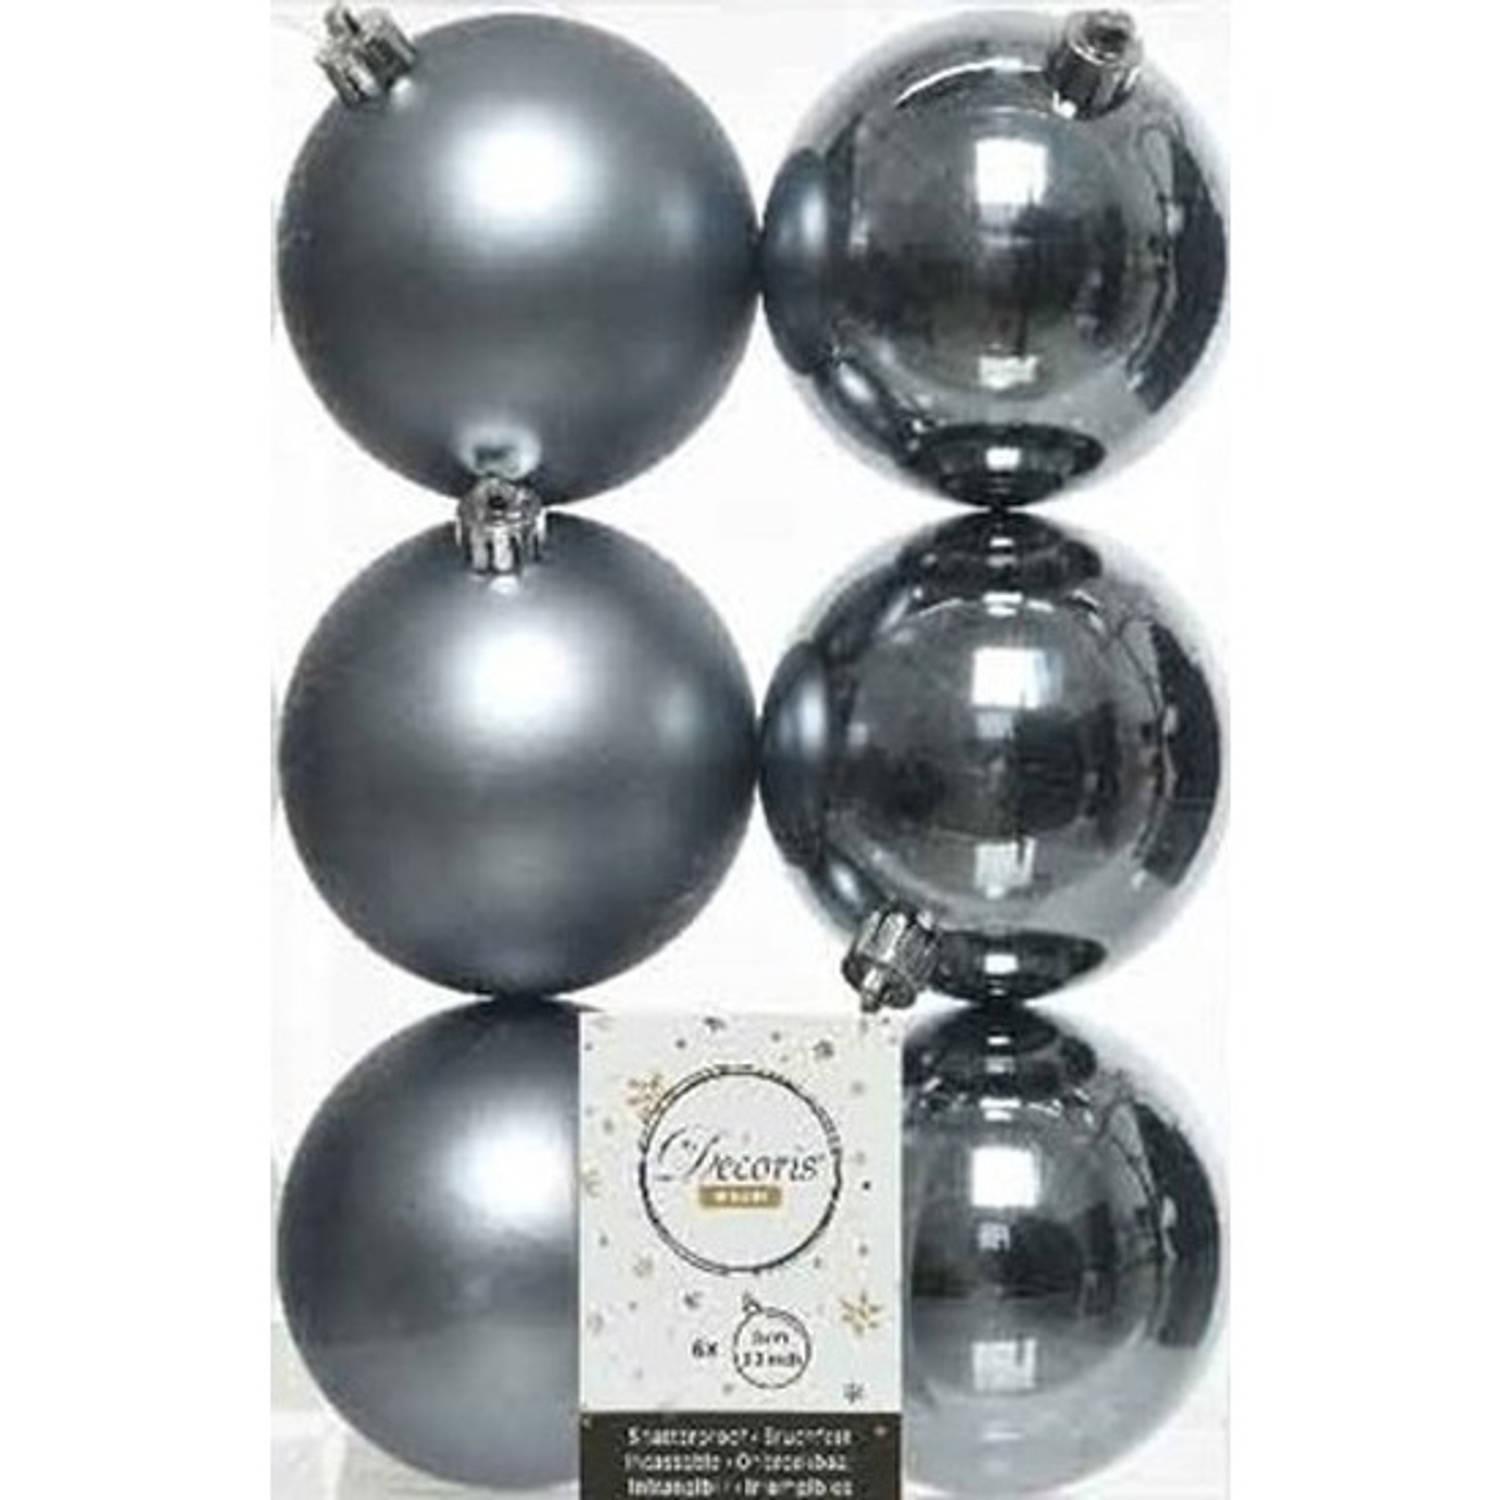 6x Kunststof kerstballen glanzend/mat grijsblauw 8 cm kerstboom versiering/decoratie - Kerstbal